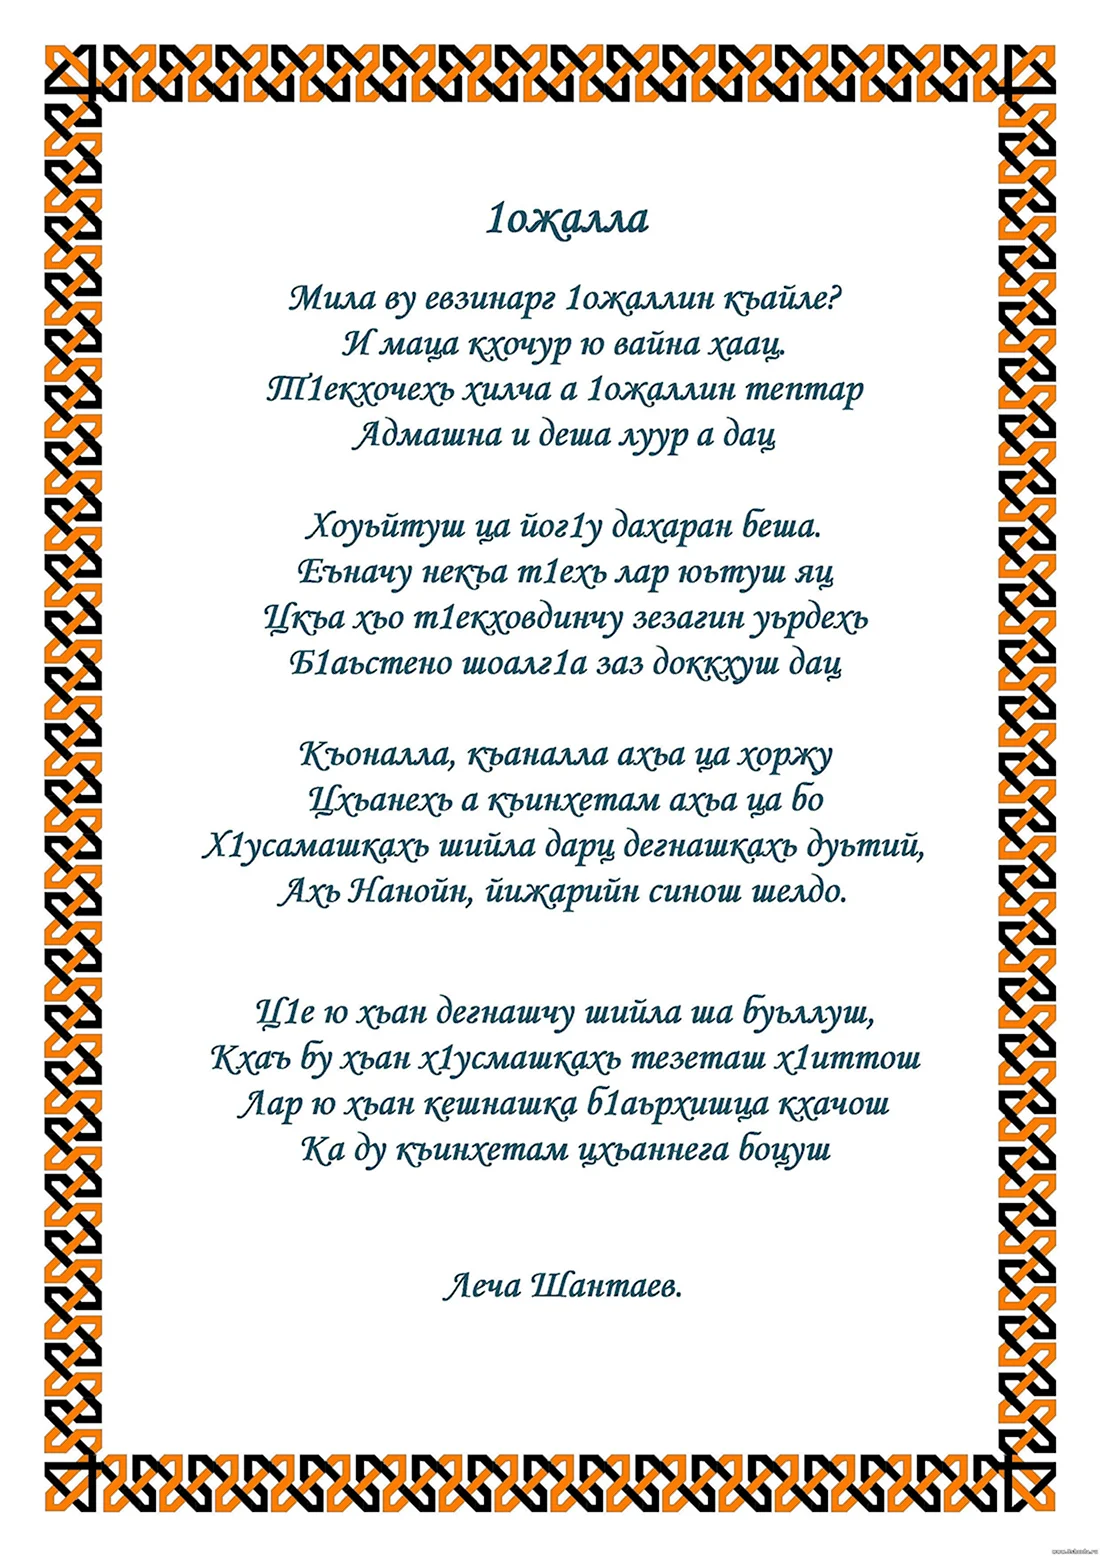 Стихи на чеченском языке. Открытка с поздравлением